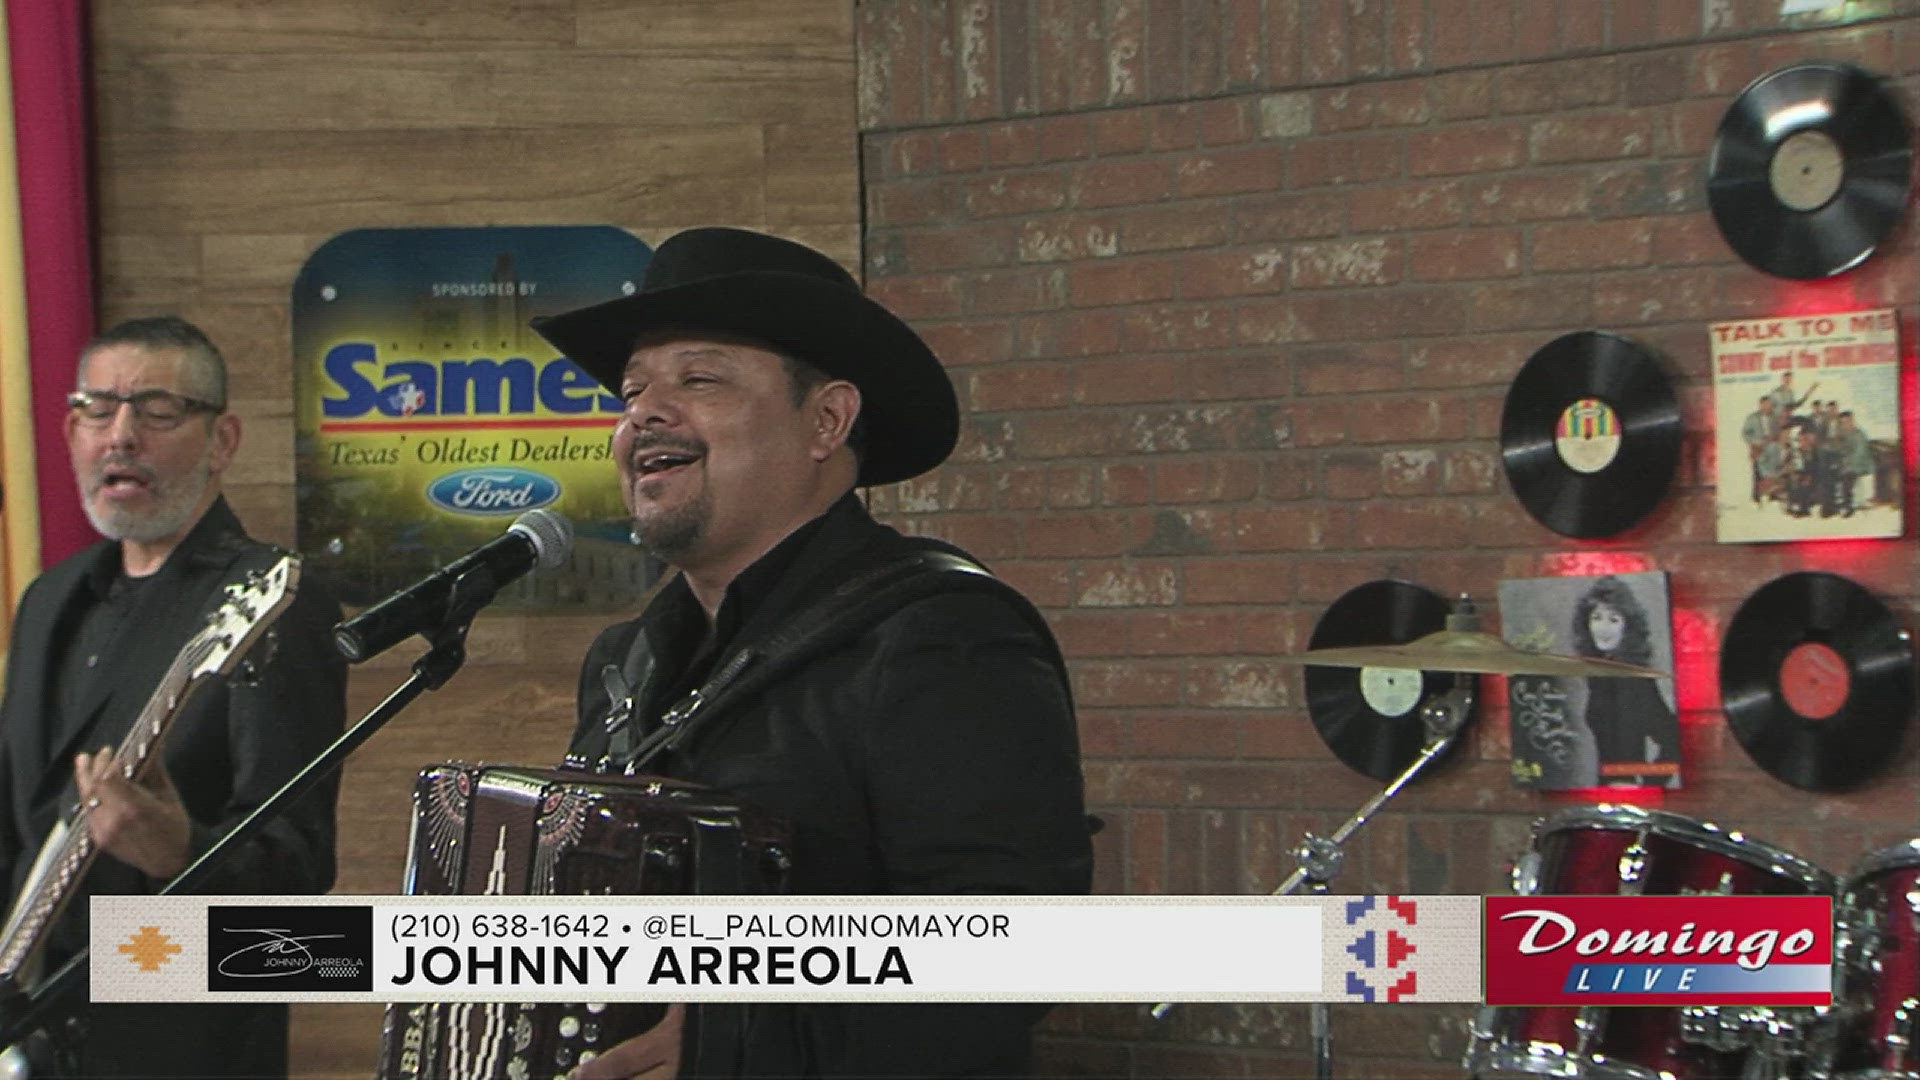 Johnny Arreola, el Palomino Mayor de Los Palominos, joined us on Domingo Live to perform his song "Contigo."